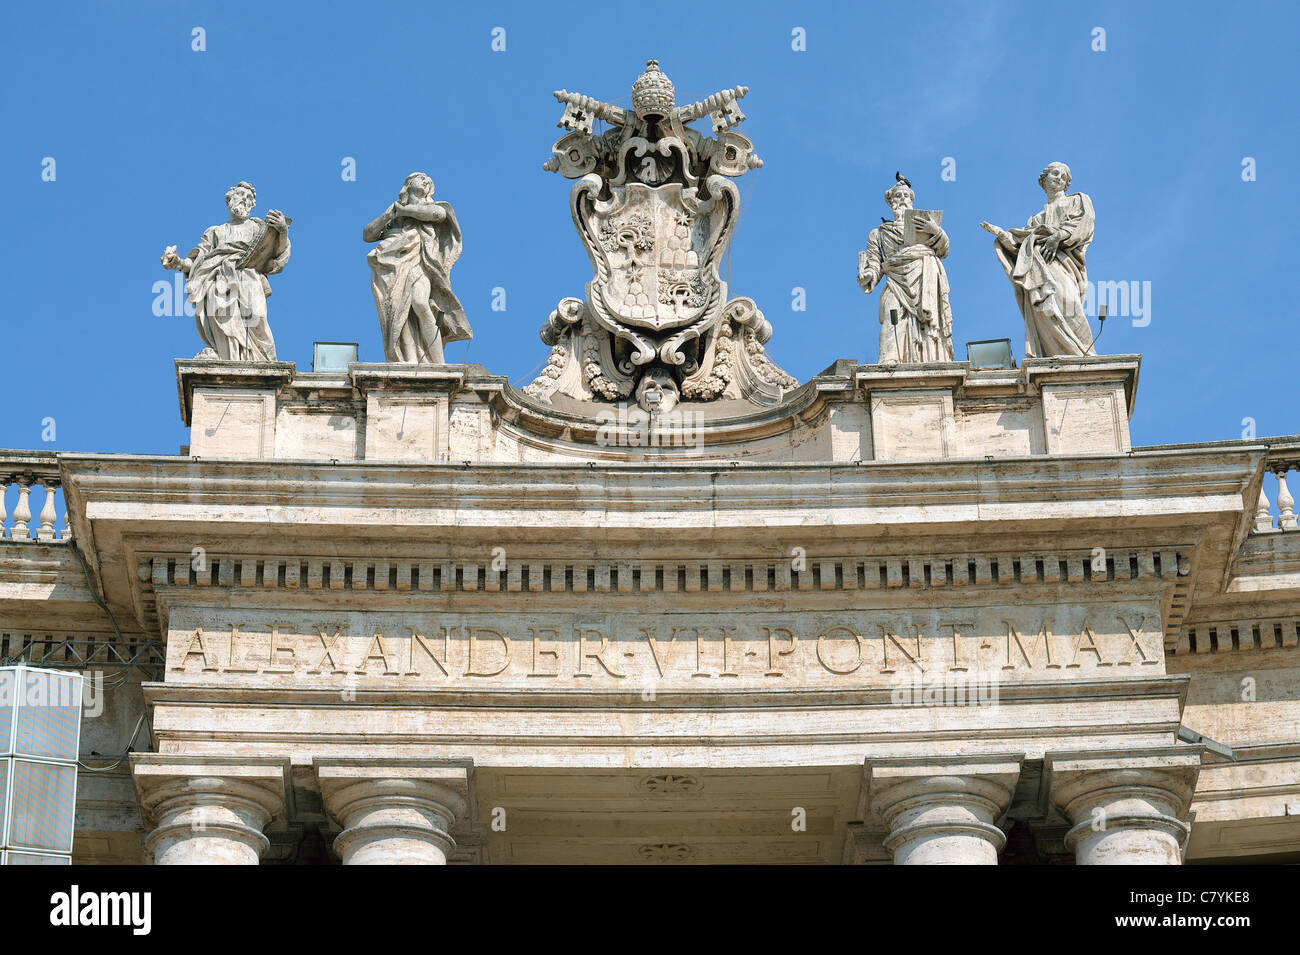 Une partie de la colonnade du Bernin s avec des statues de saints Piazza San Pietro Place Saint Pierre Rome Italie Banque D'Images